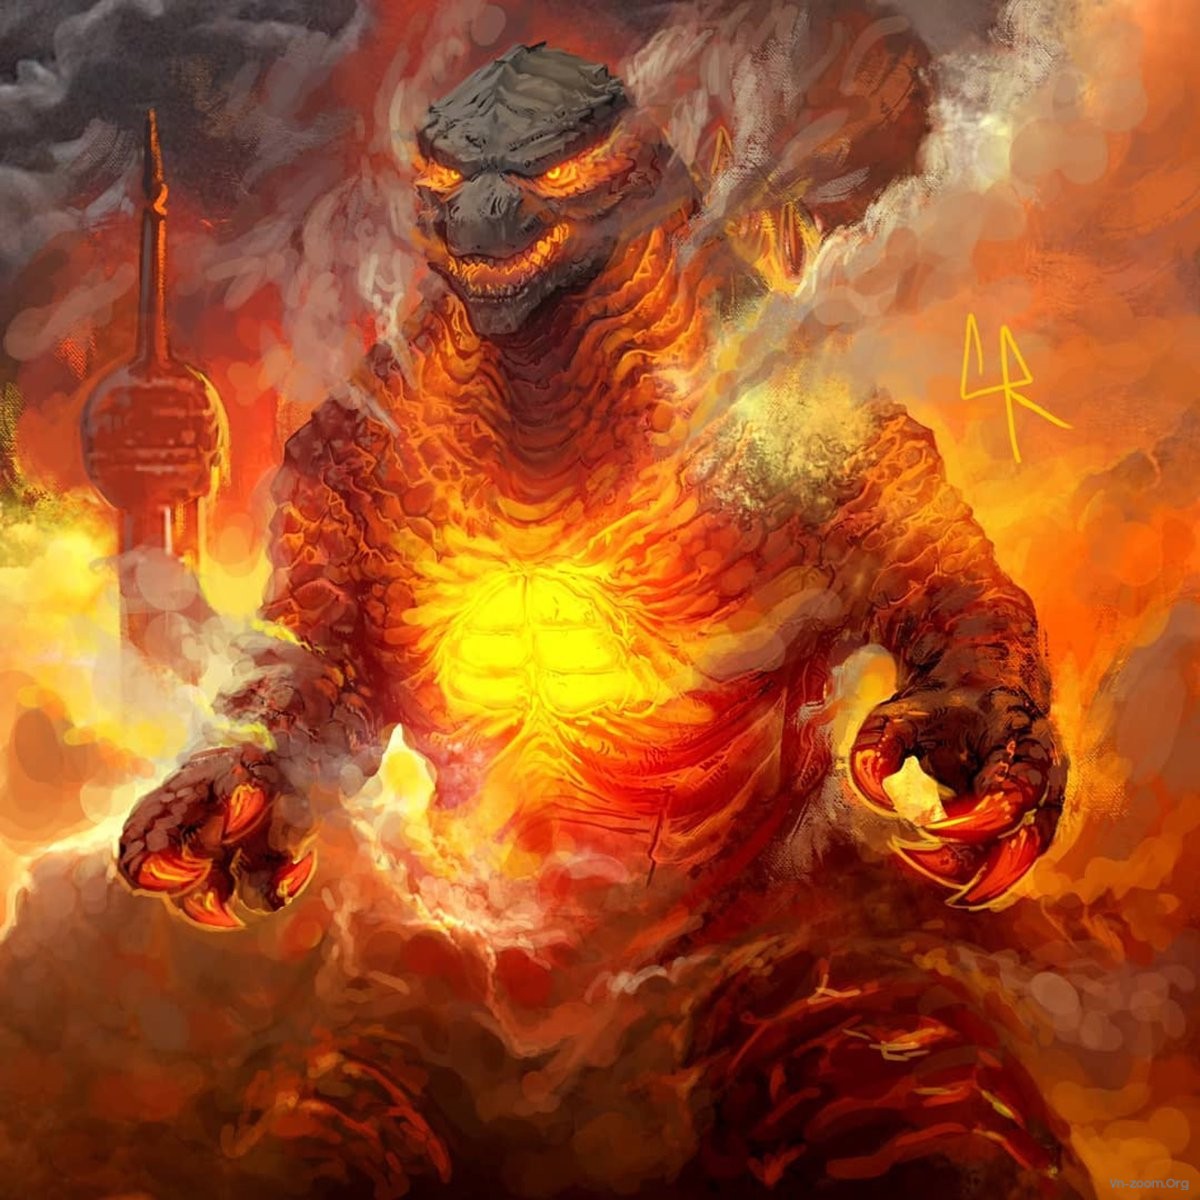 Chúa tể Godzilla - biểu tượng của sự khủng hoảng và sức mạnh đáng kinh ngạc. Hãy xem hình ảnh liên quan để tận hưởng sự tinh tế và độc đáo trong phong cách của Chúa tể này.